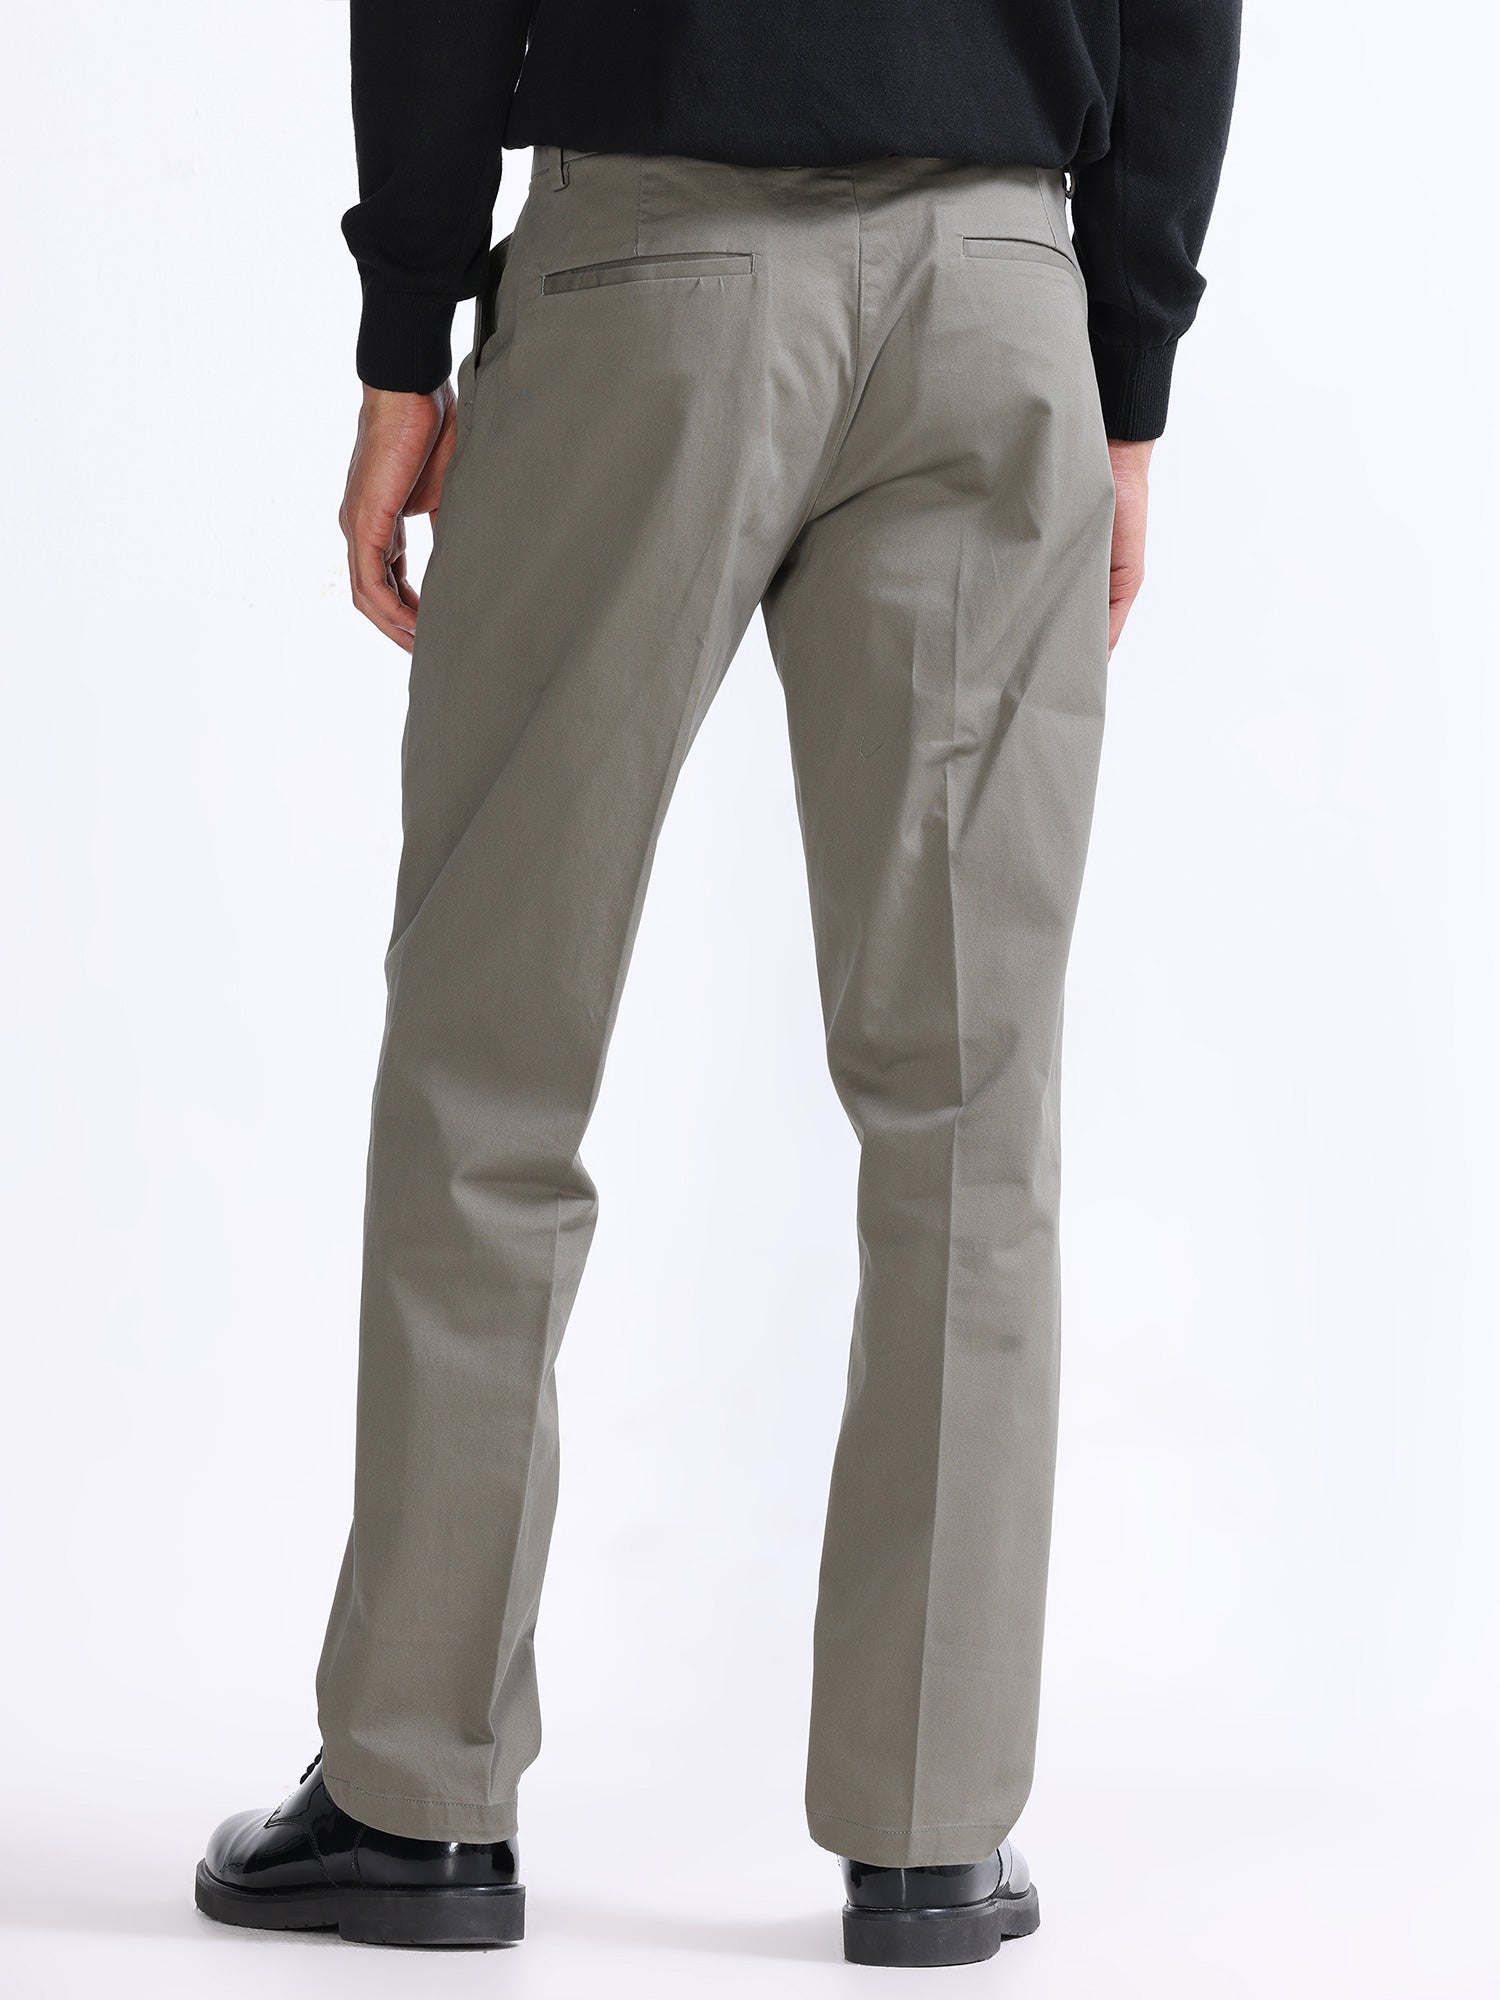 Green cargo model trousers - Exibit